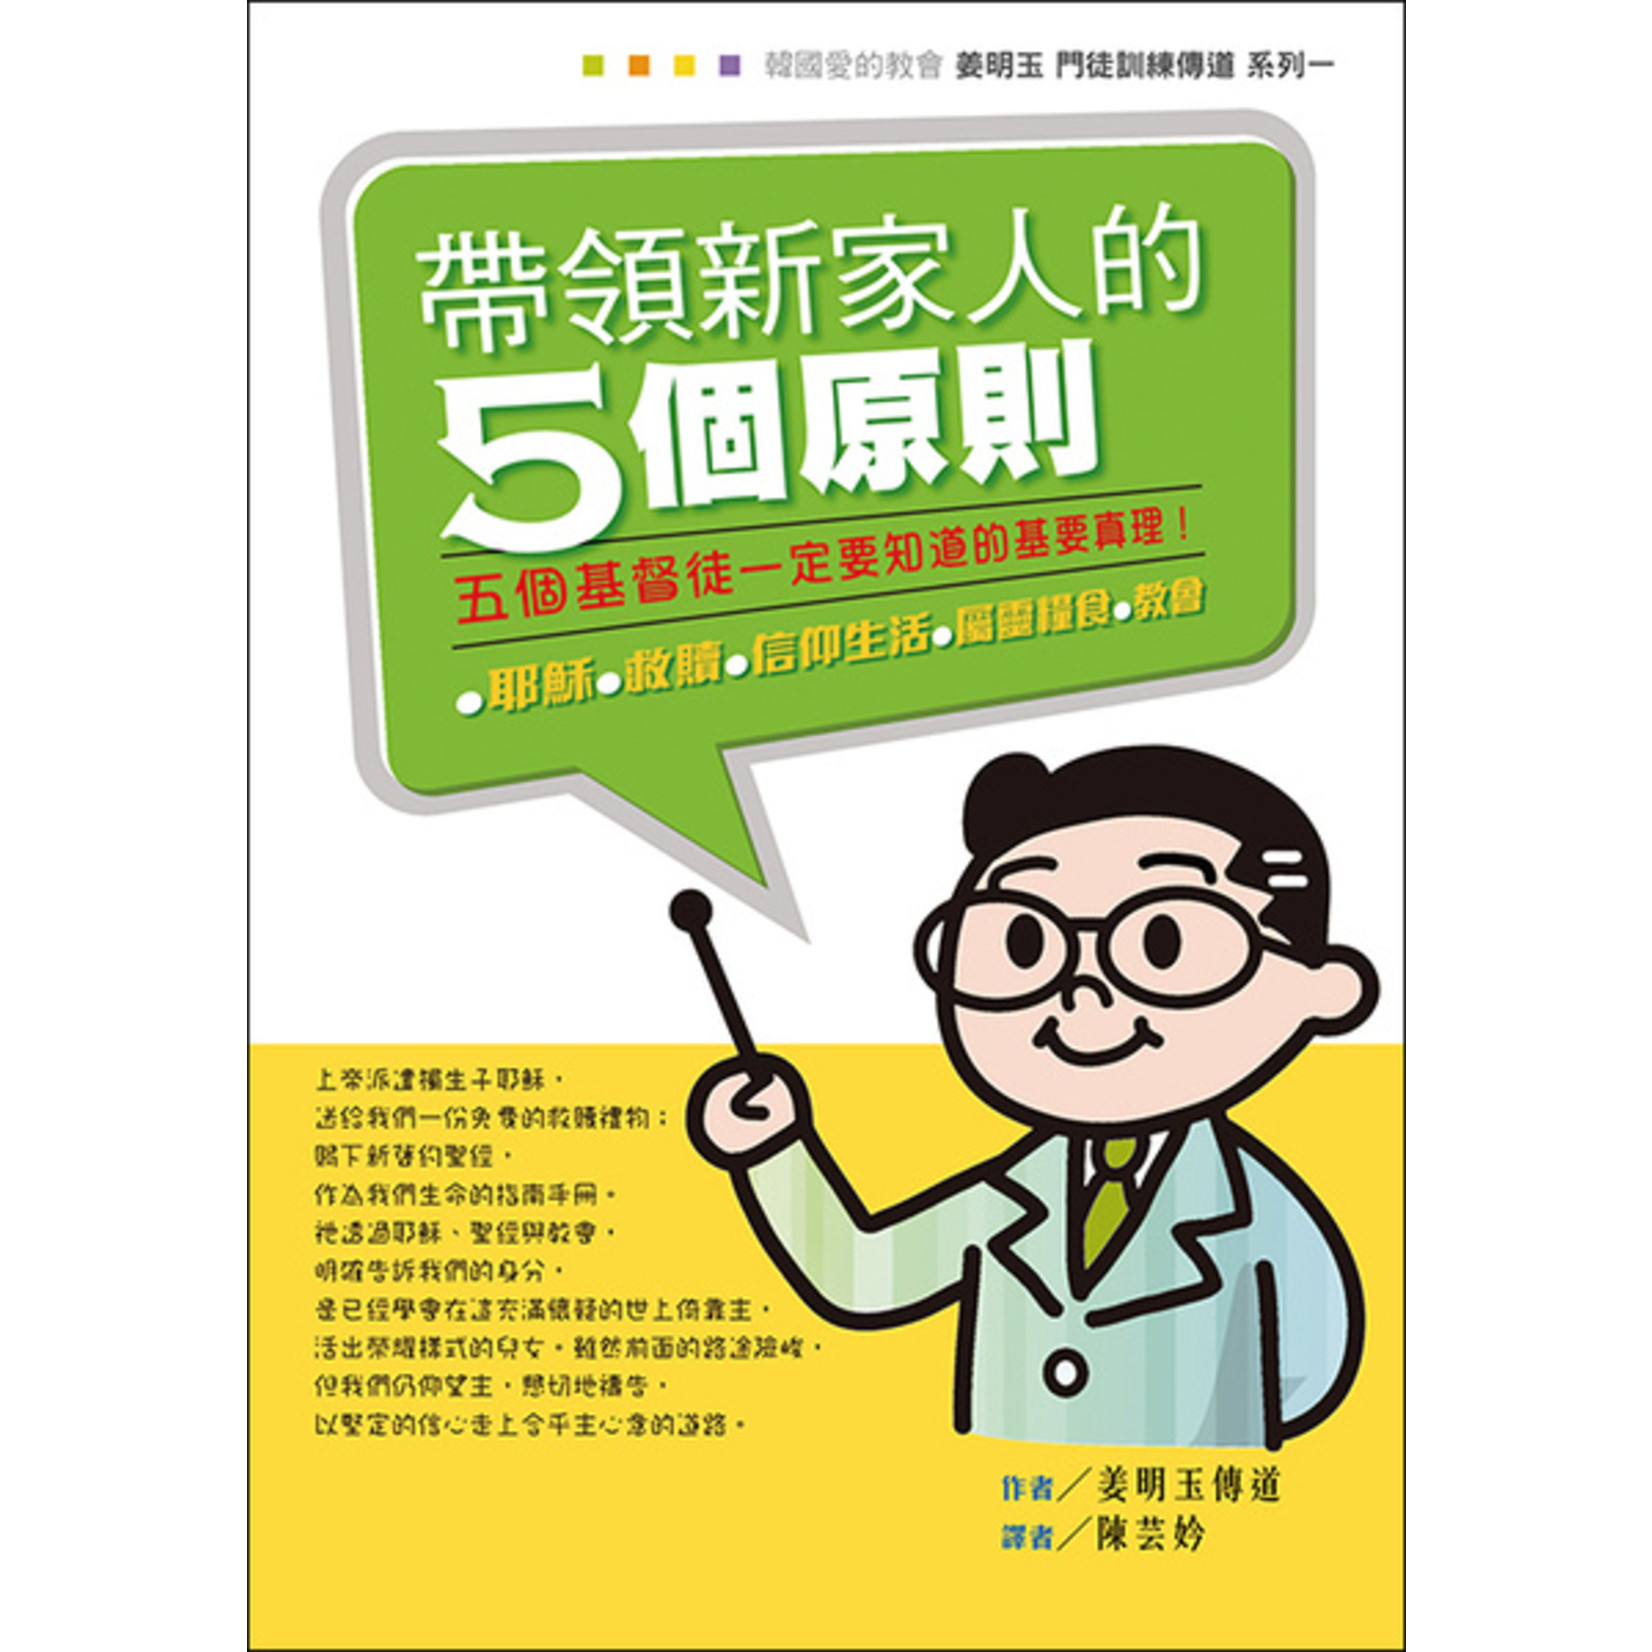 道聲 Taosheng Taiwan 帶領新家人的5個原則